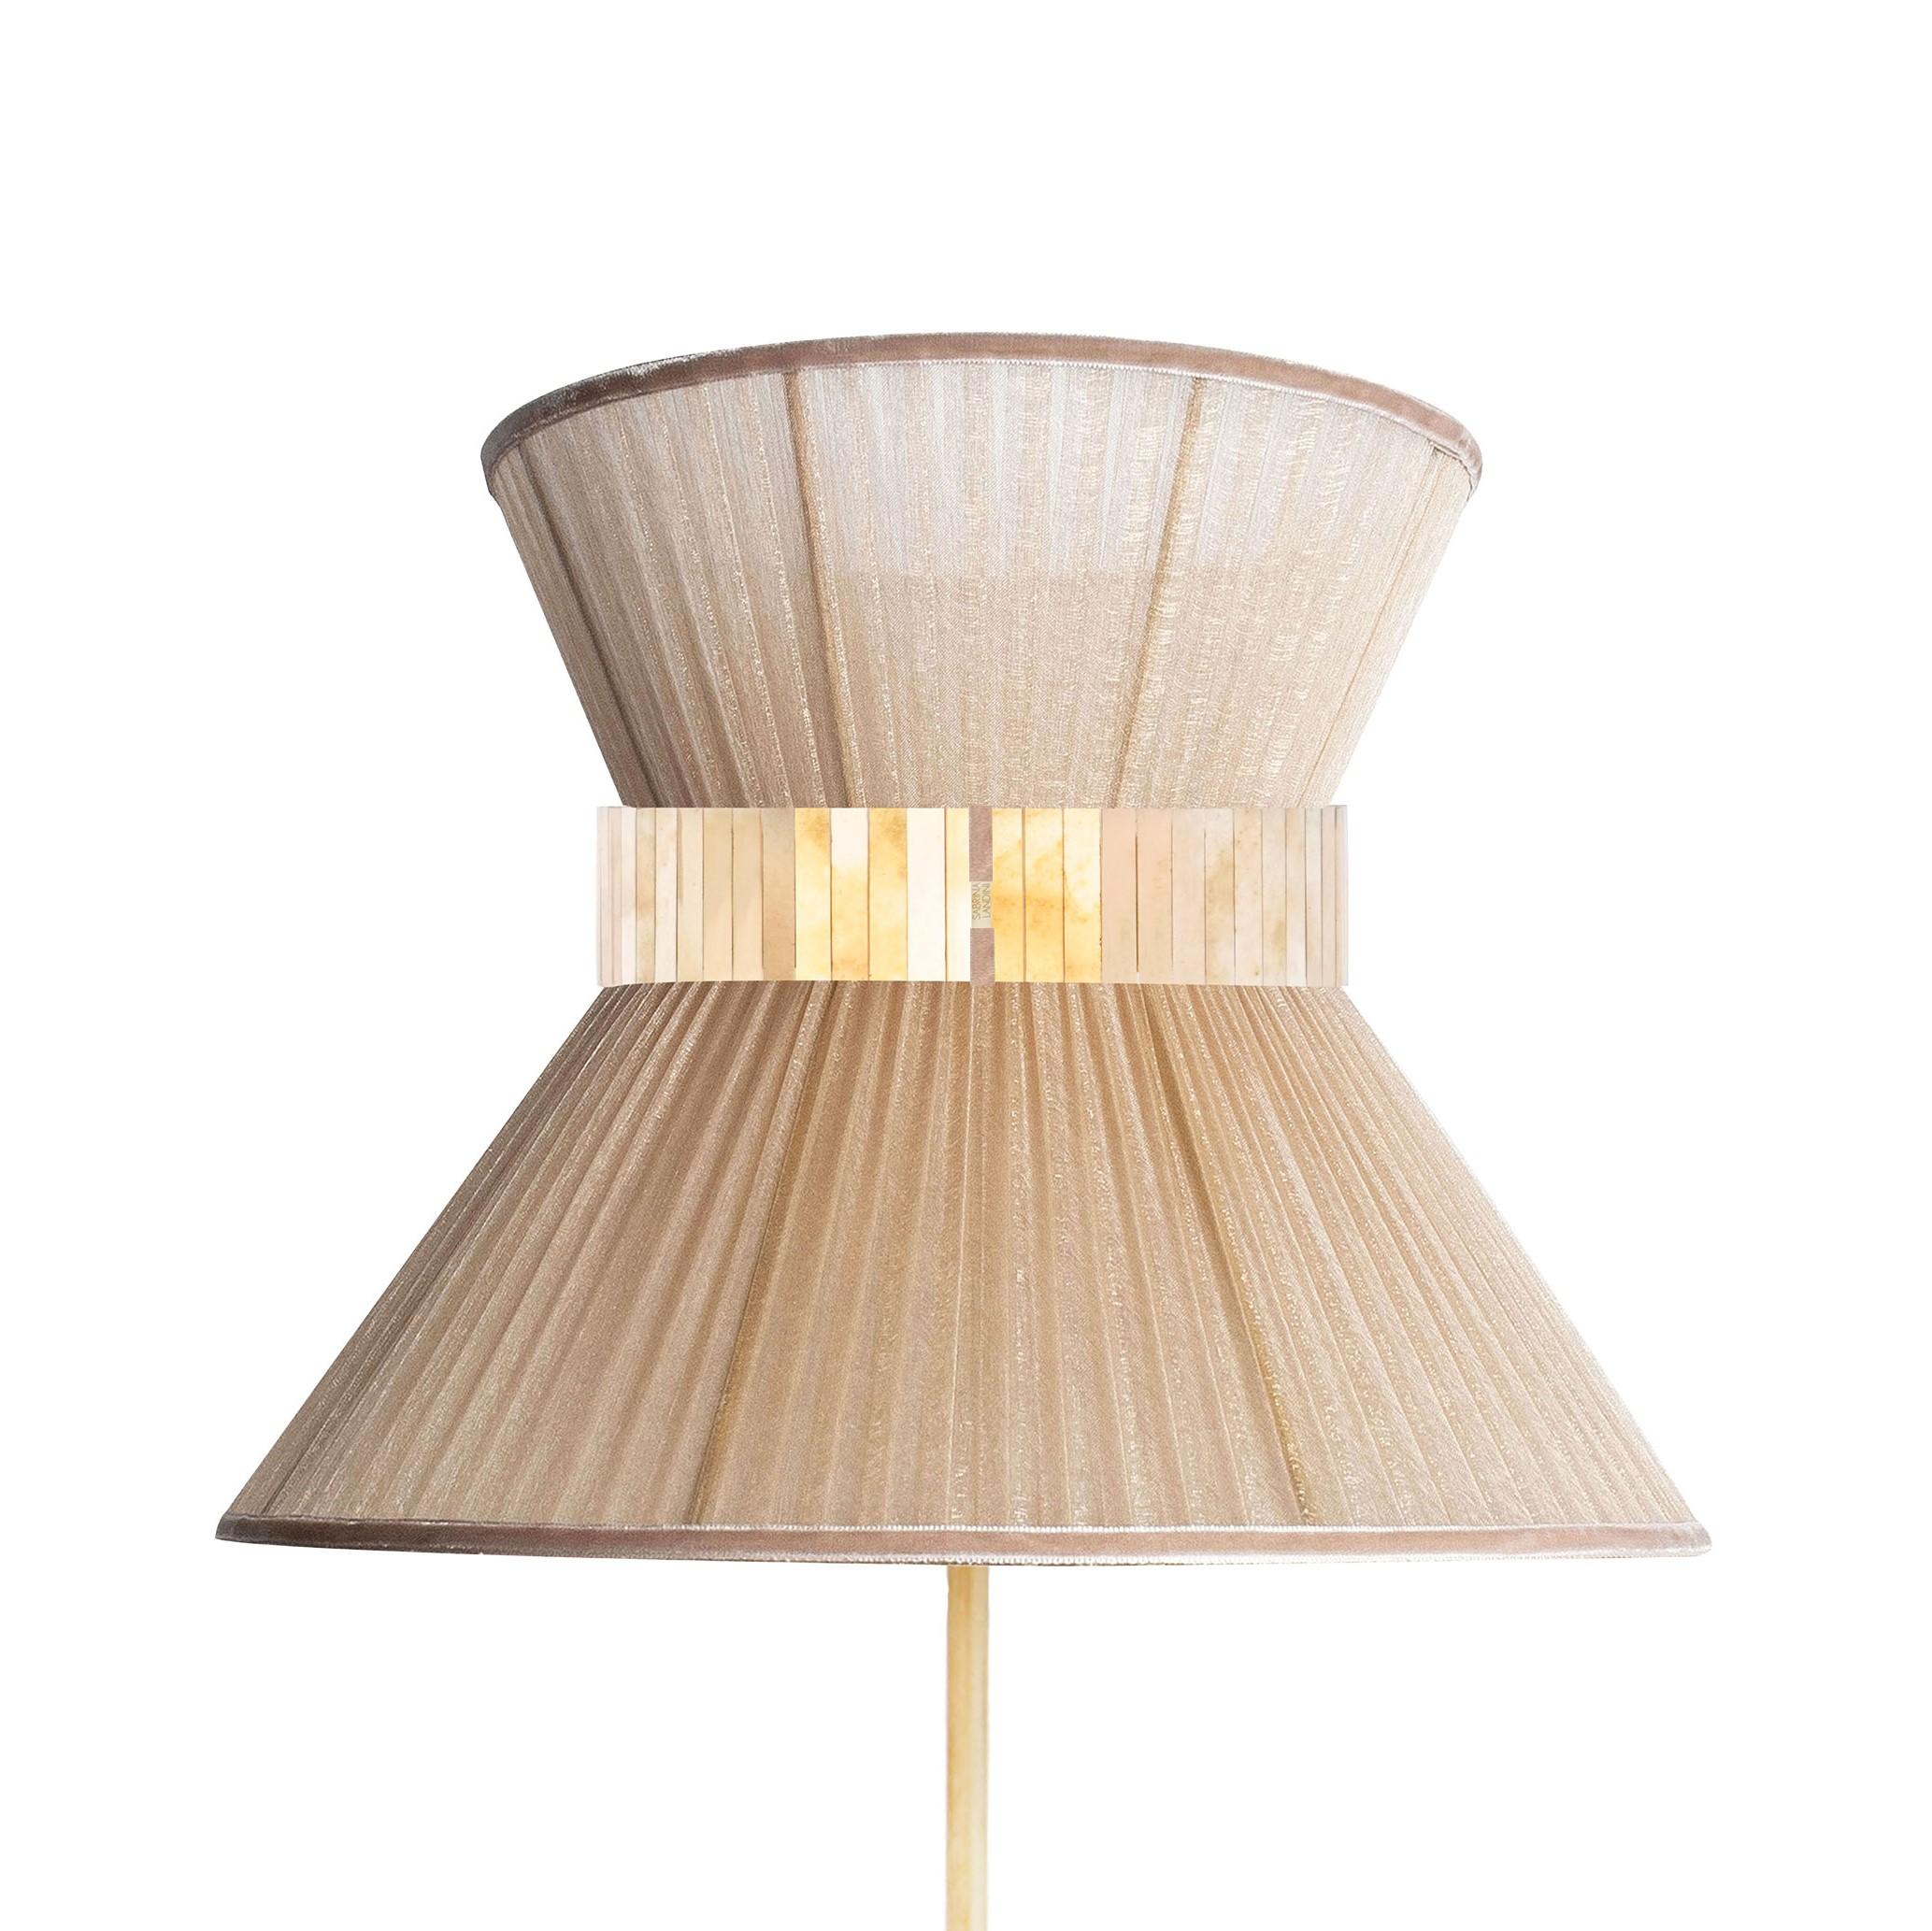 TIFFANY die kultige Lampe!

Sabrinas atemberaubende Collection'S von Tiffany-Lampen wird vorgestellt.
Tiffany, eine zeitlose Lampe, inspiriert durch den internationalen Film 